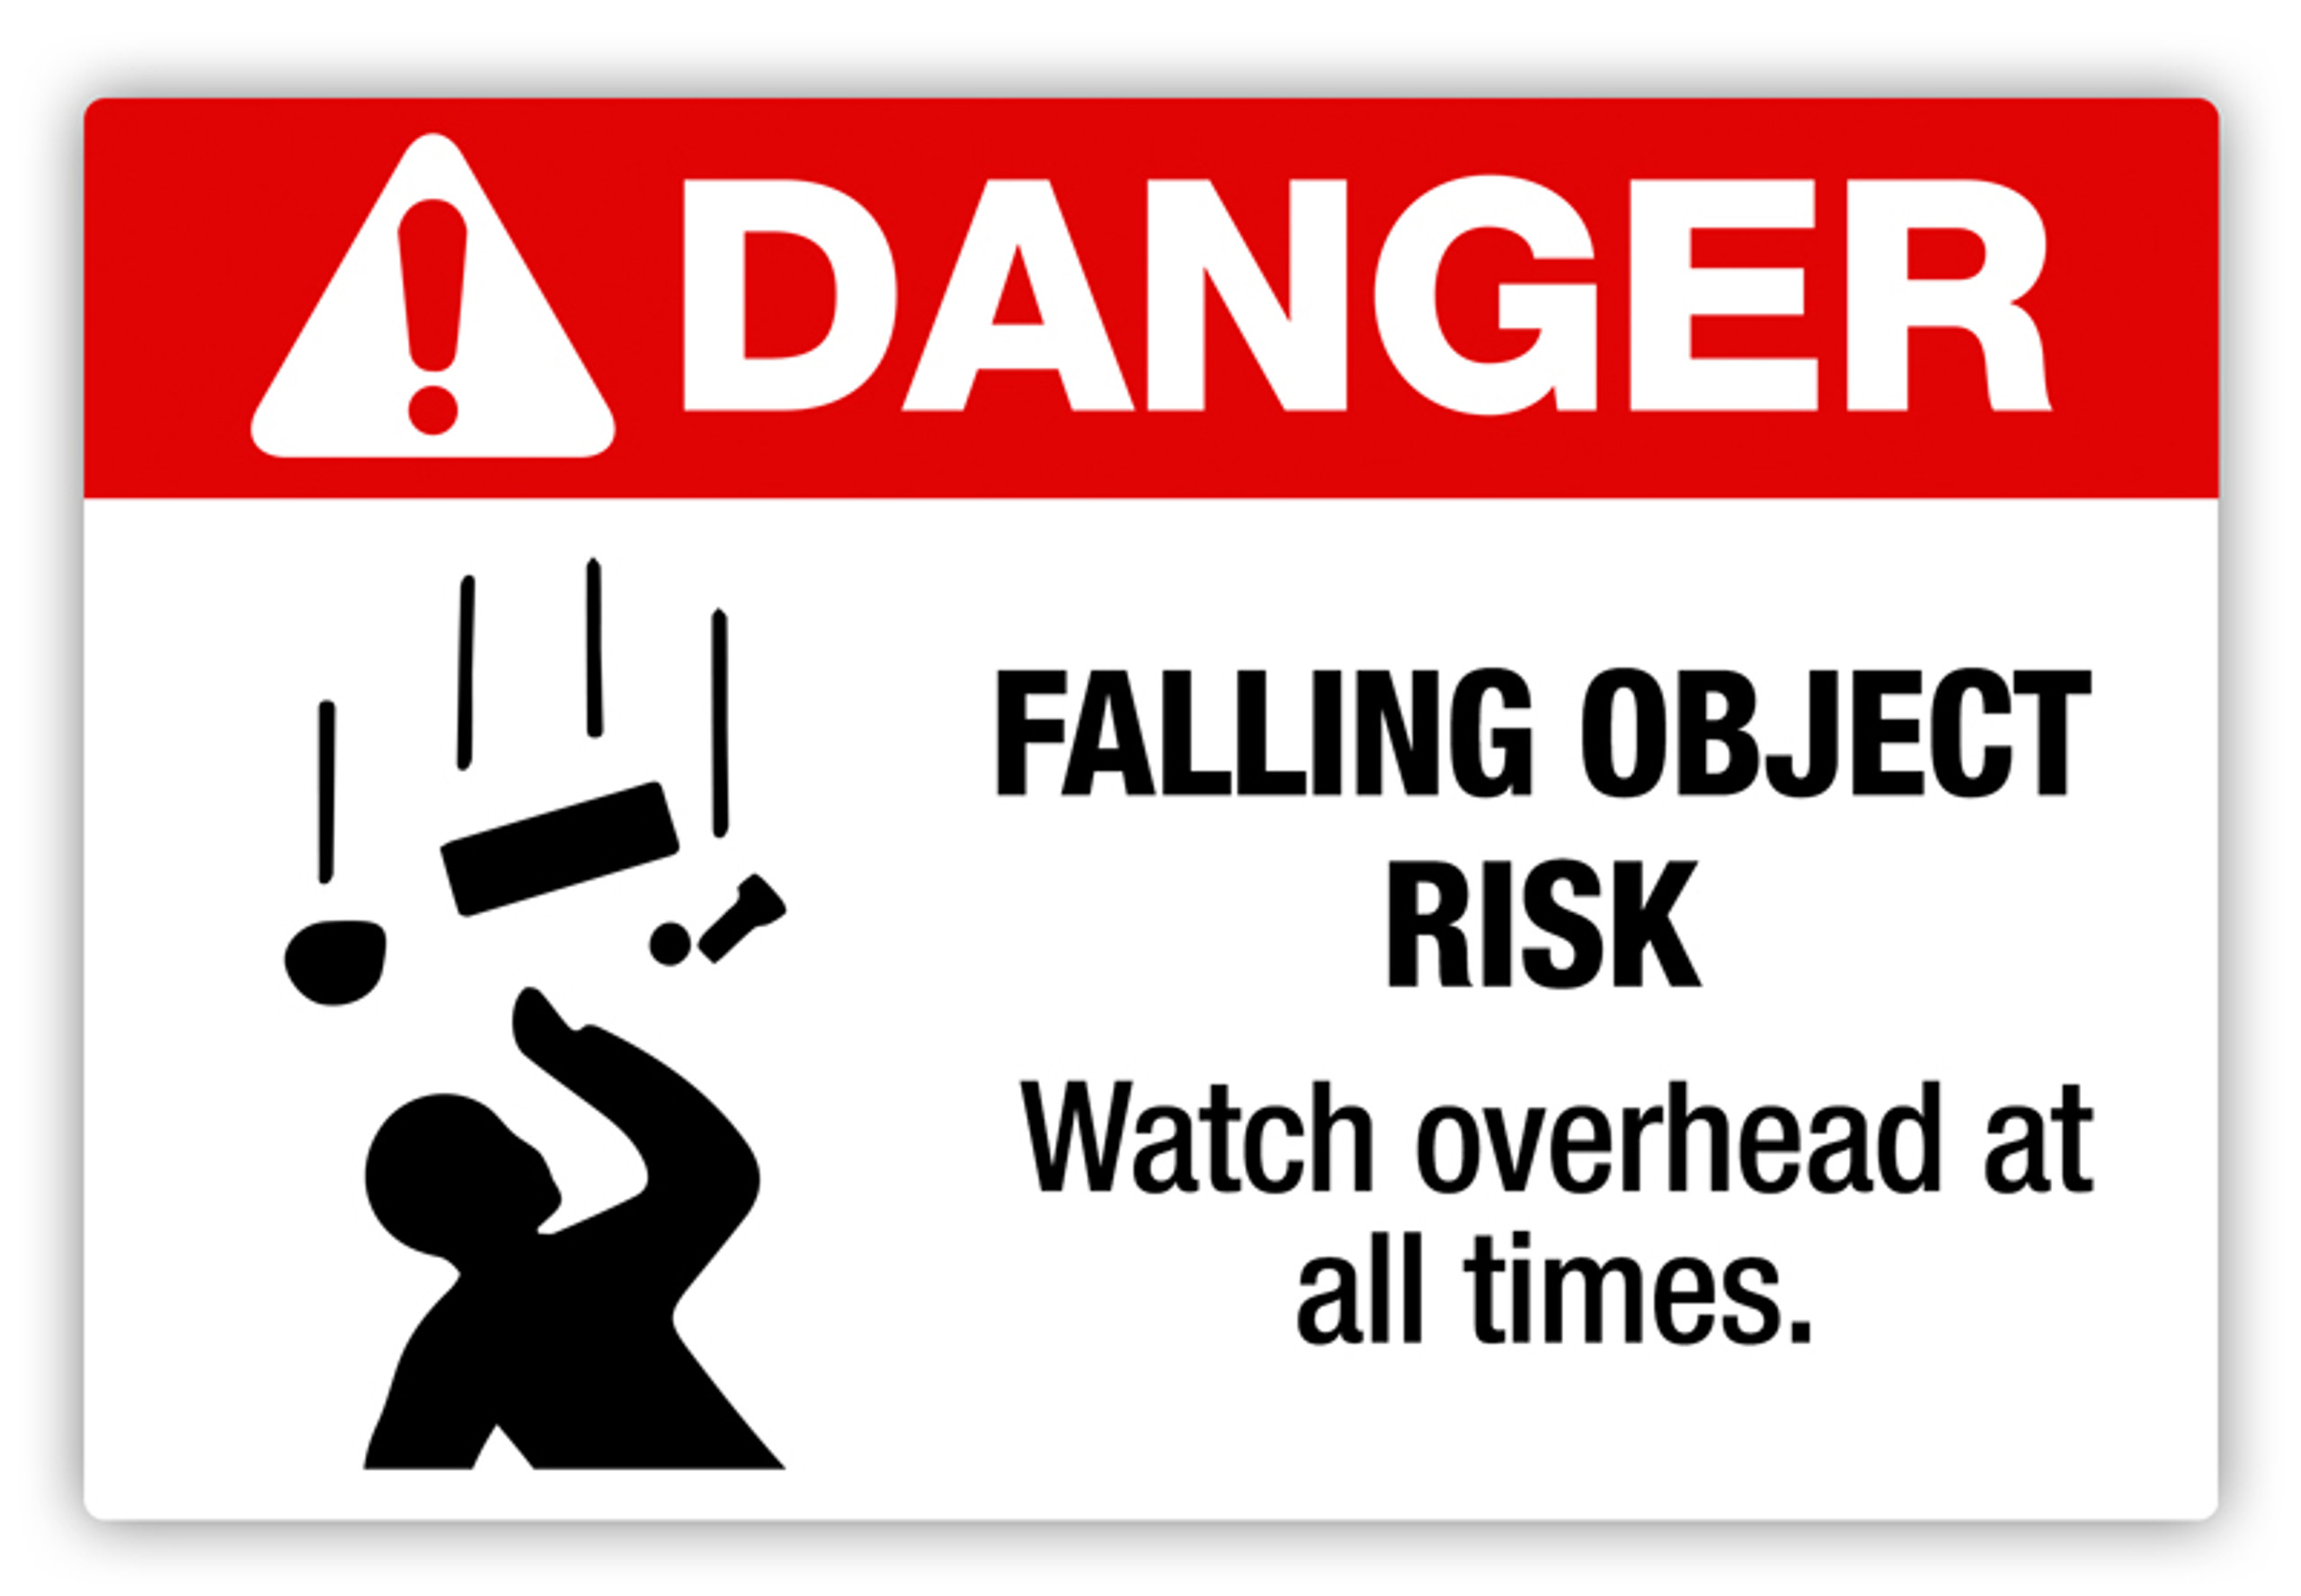 Falling For Danger Ch 20 Danger - Falling Object Risk Label